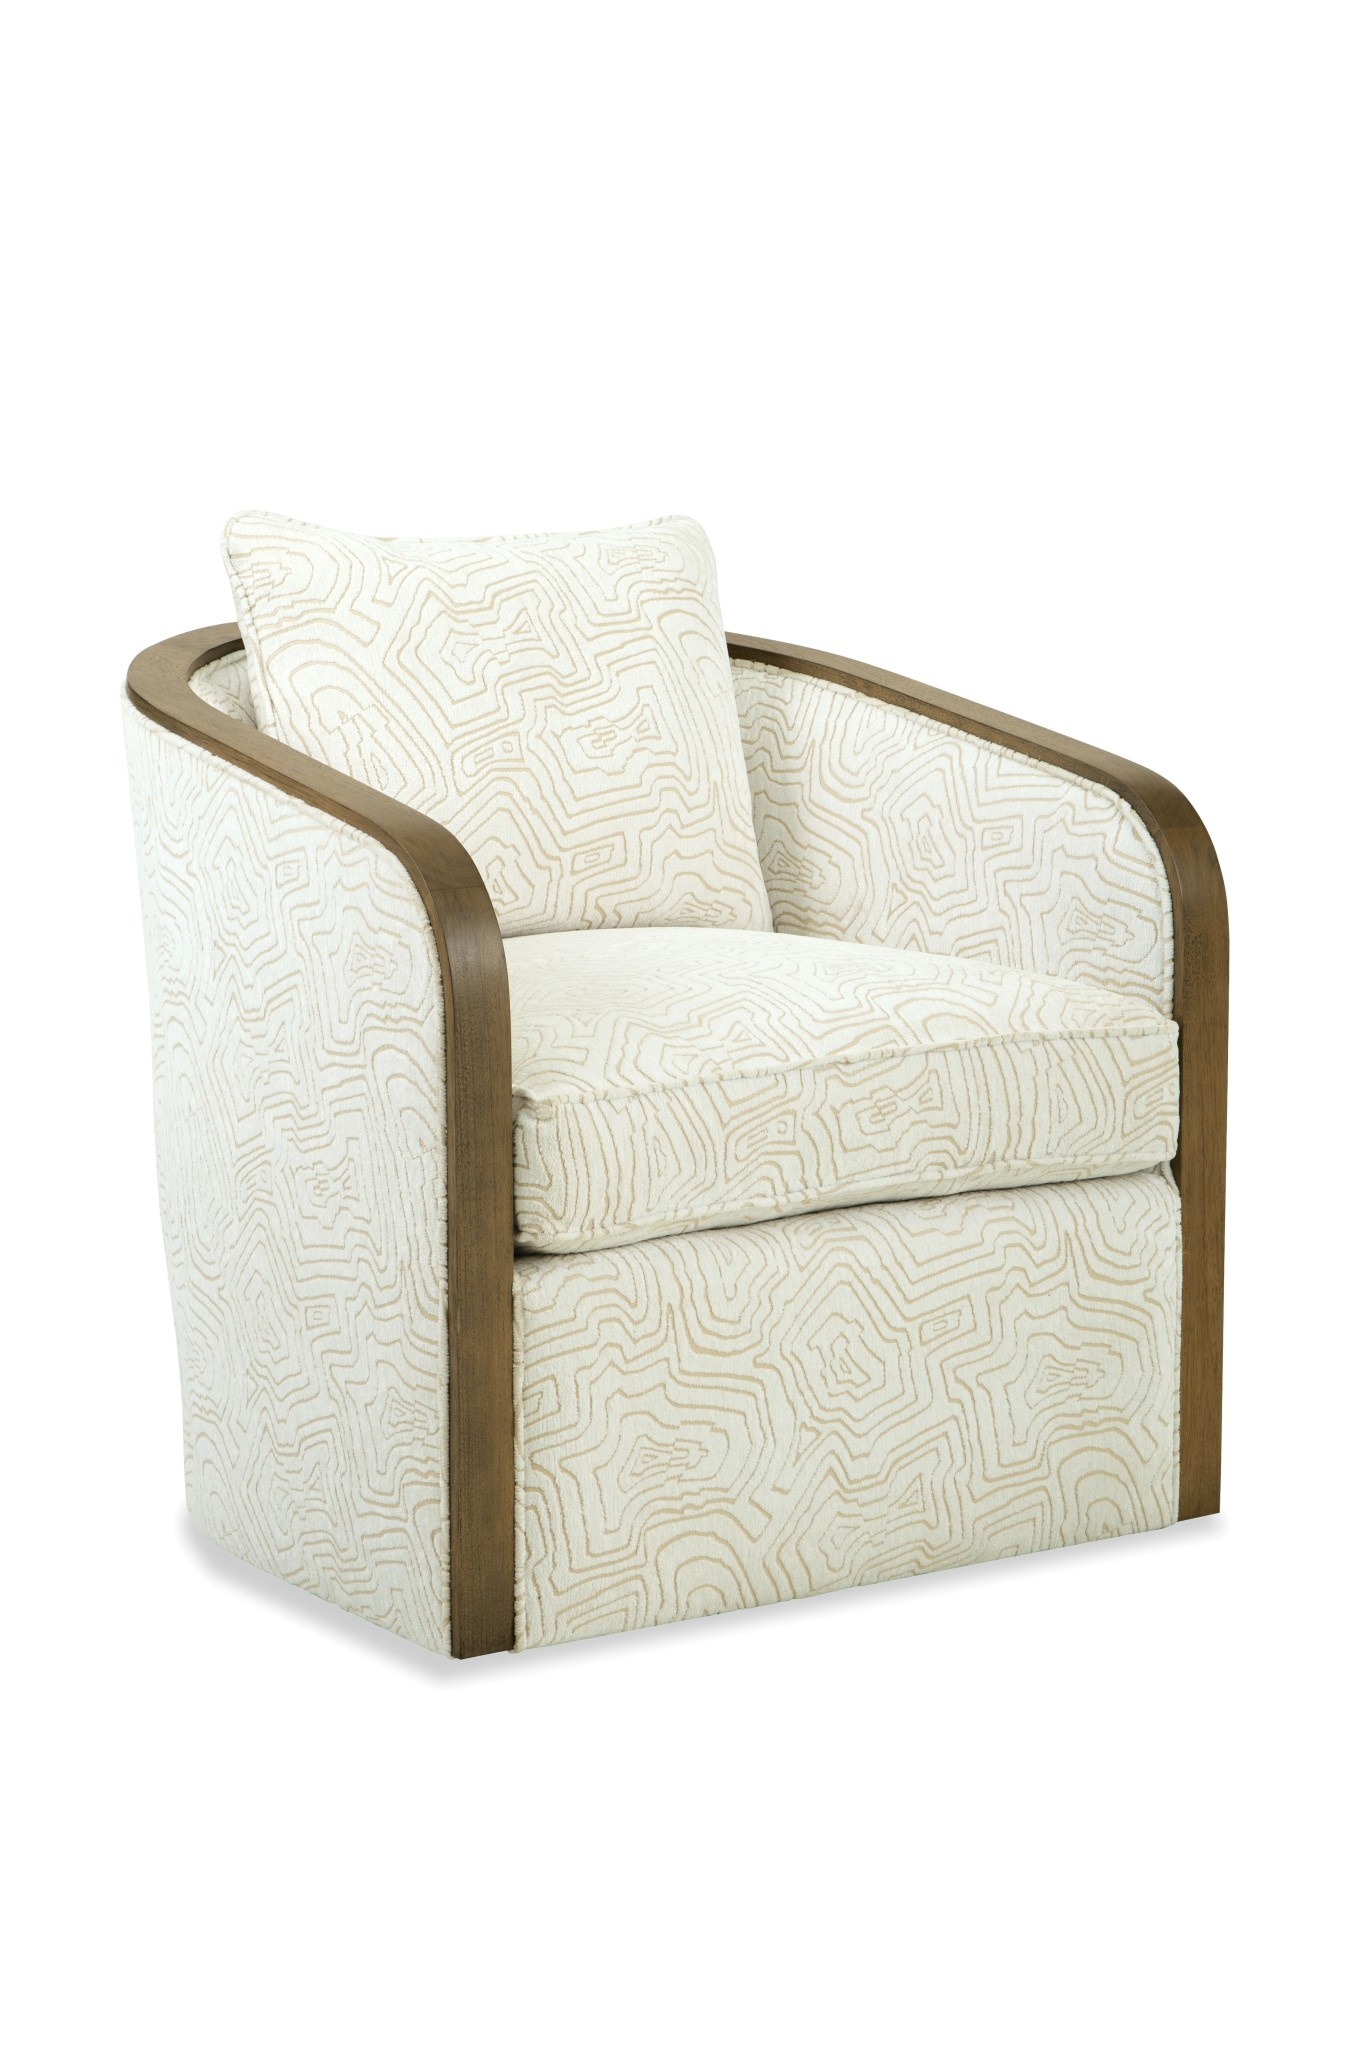 Craftmaster Furniture P039410BDSC Paula Deen Swivel Chair